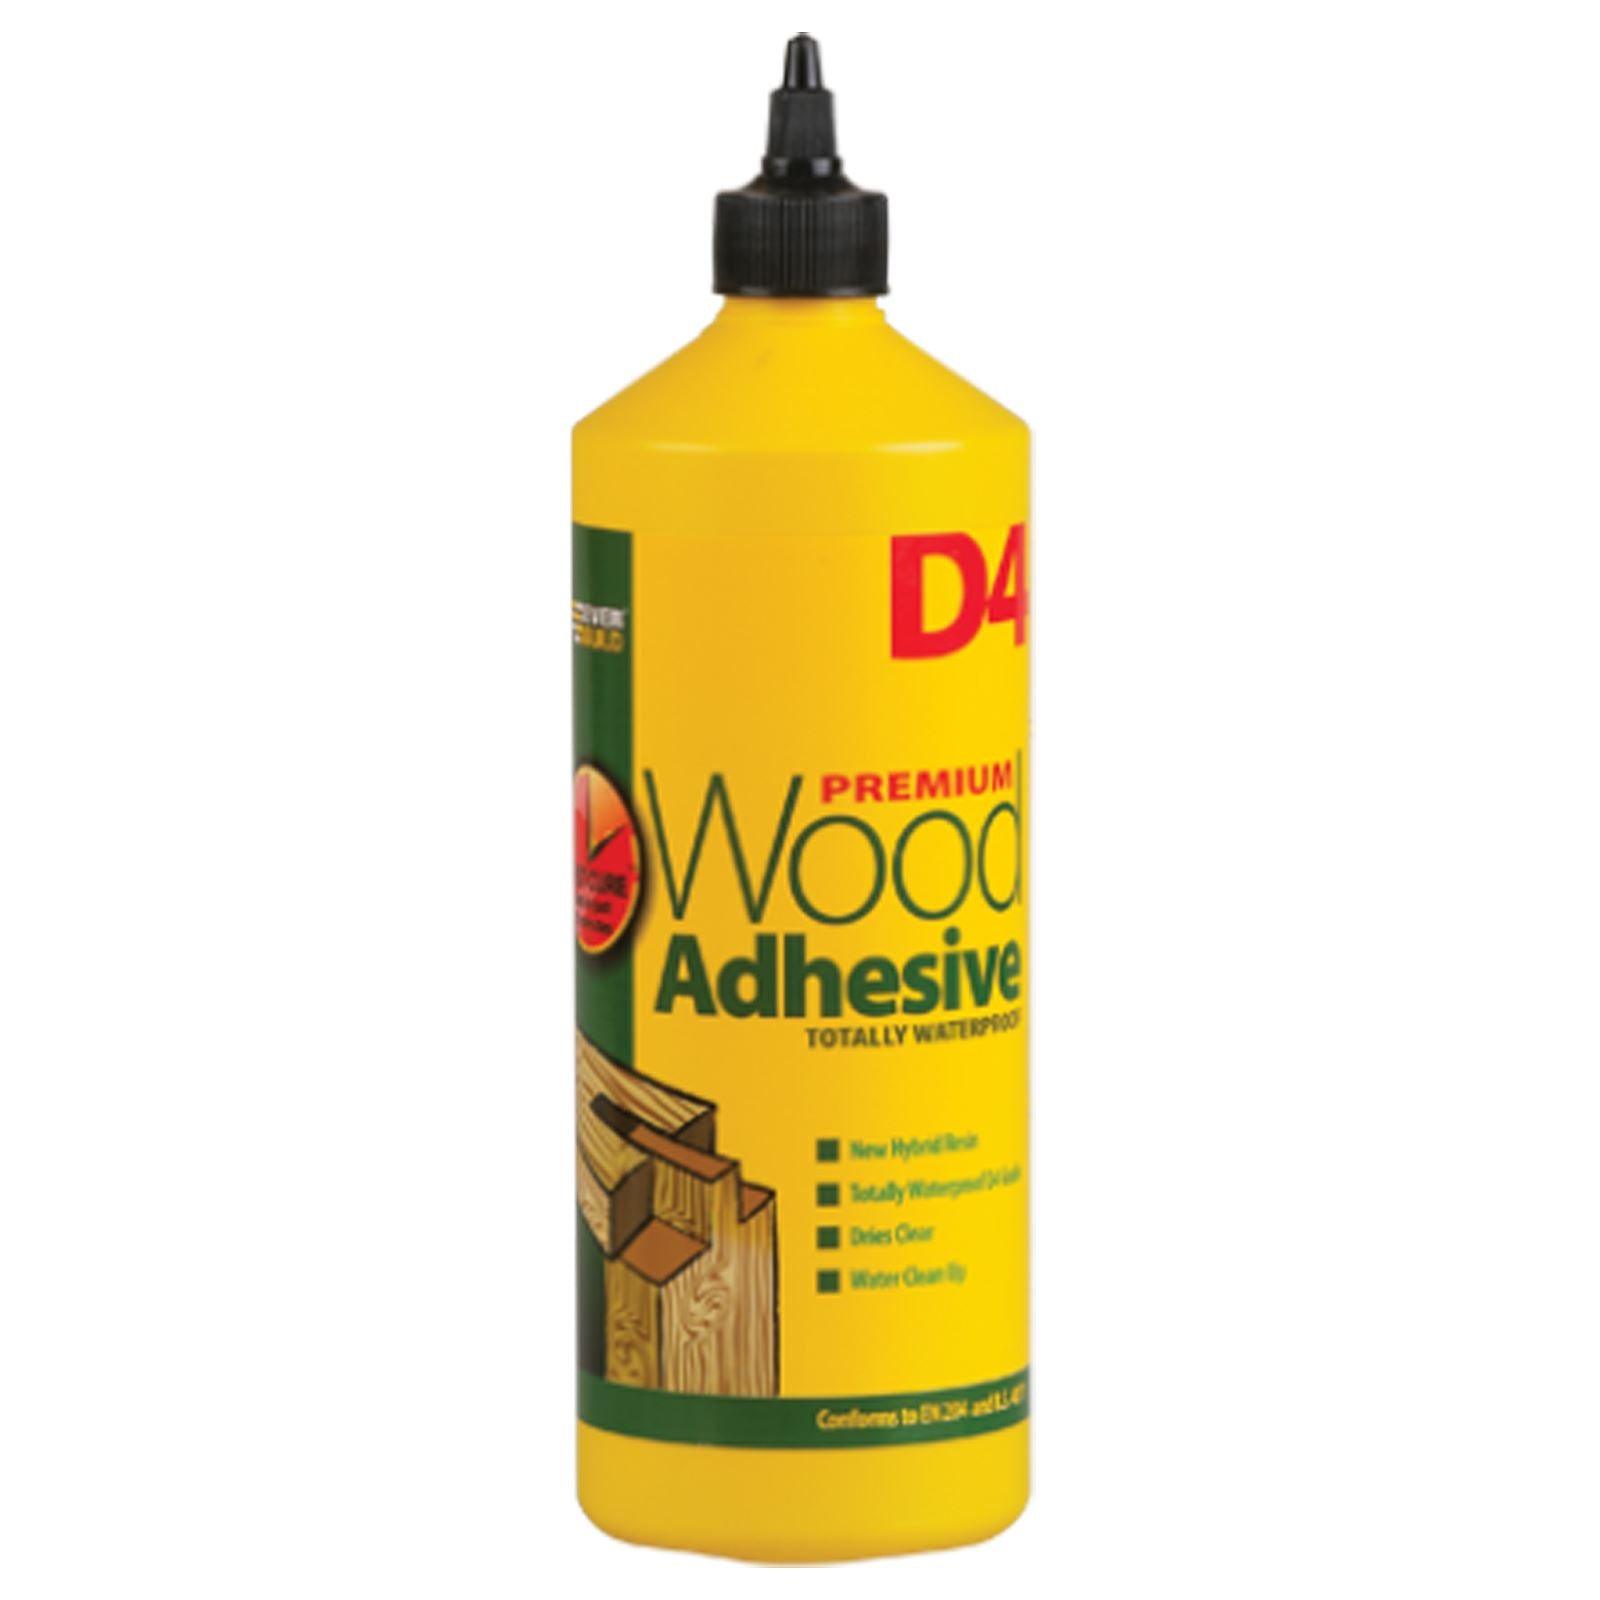 EverBuild 1 Litre D4 Premium Wood Adhesive Totally Waterproof